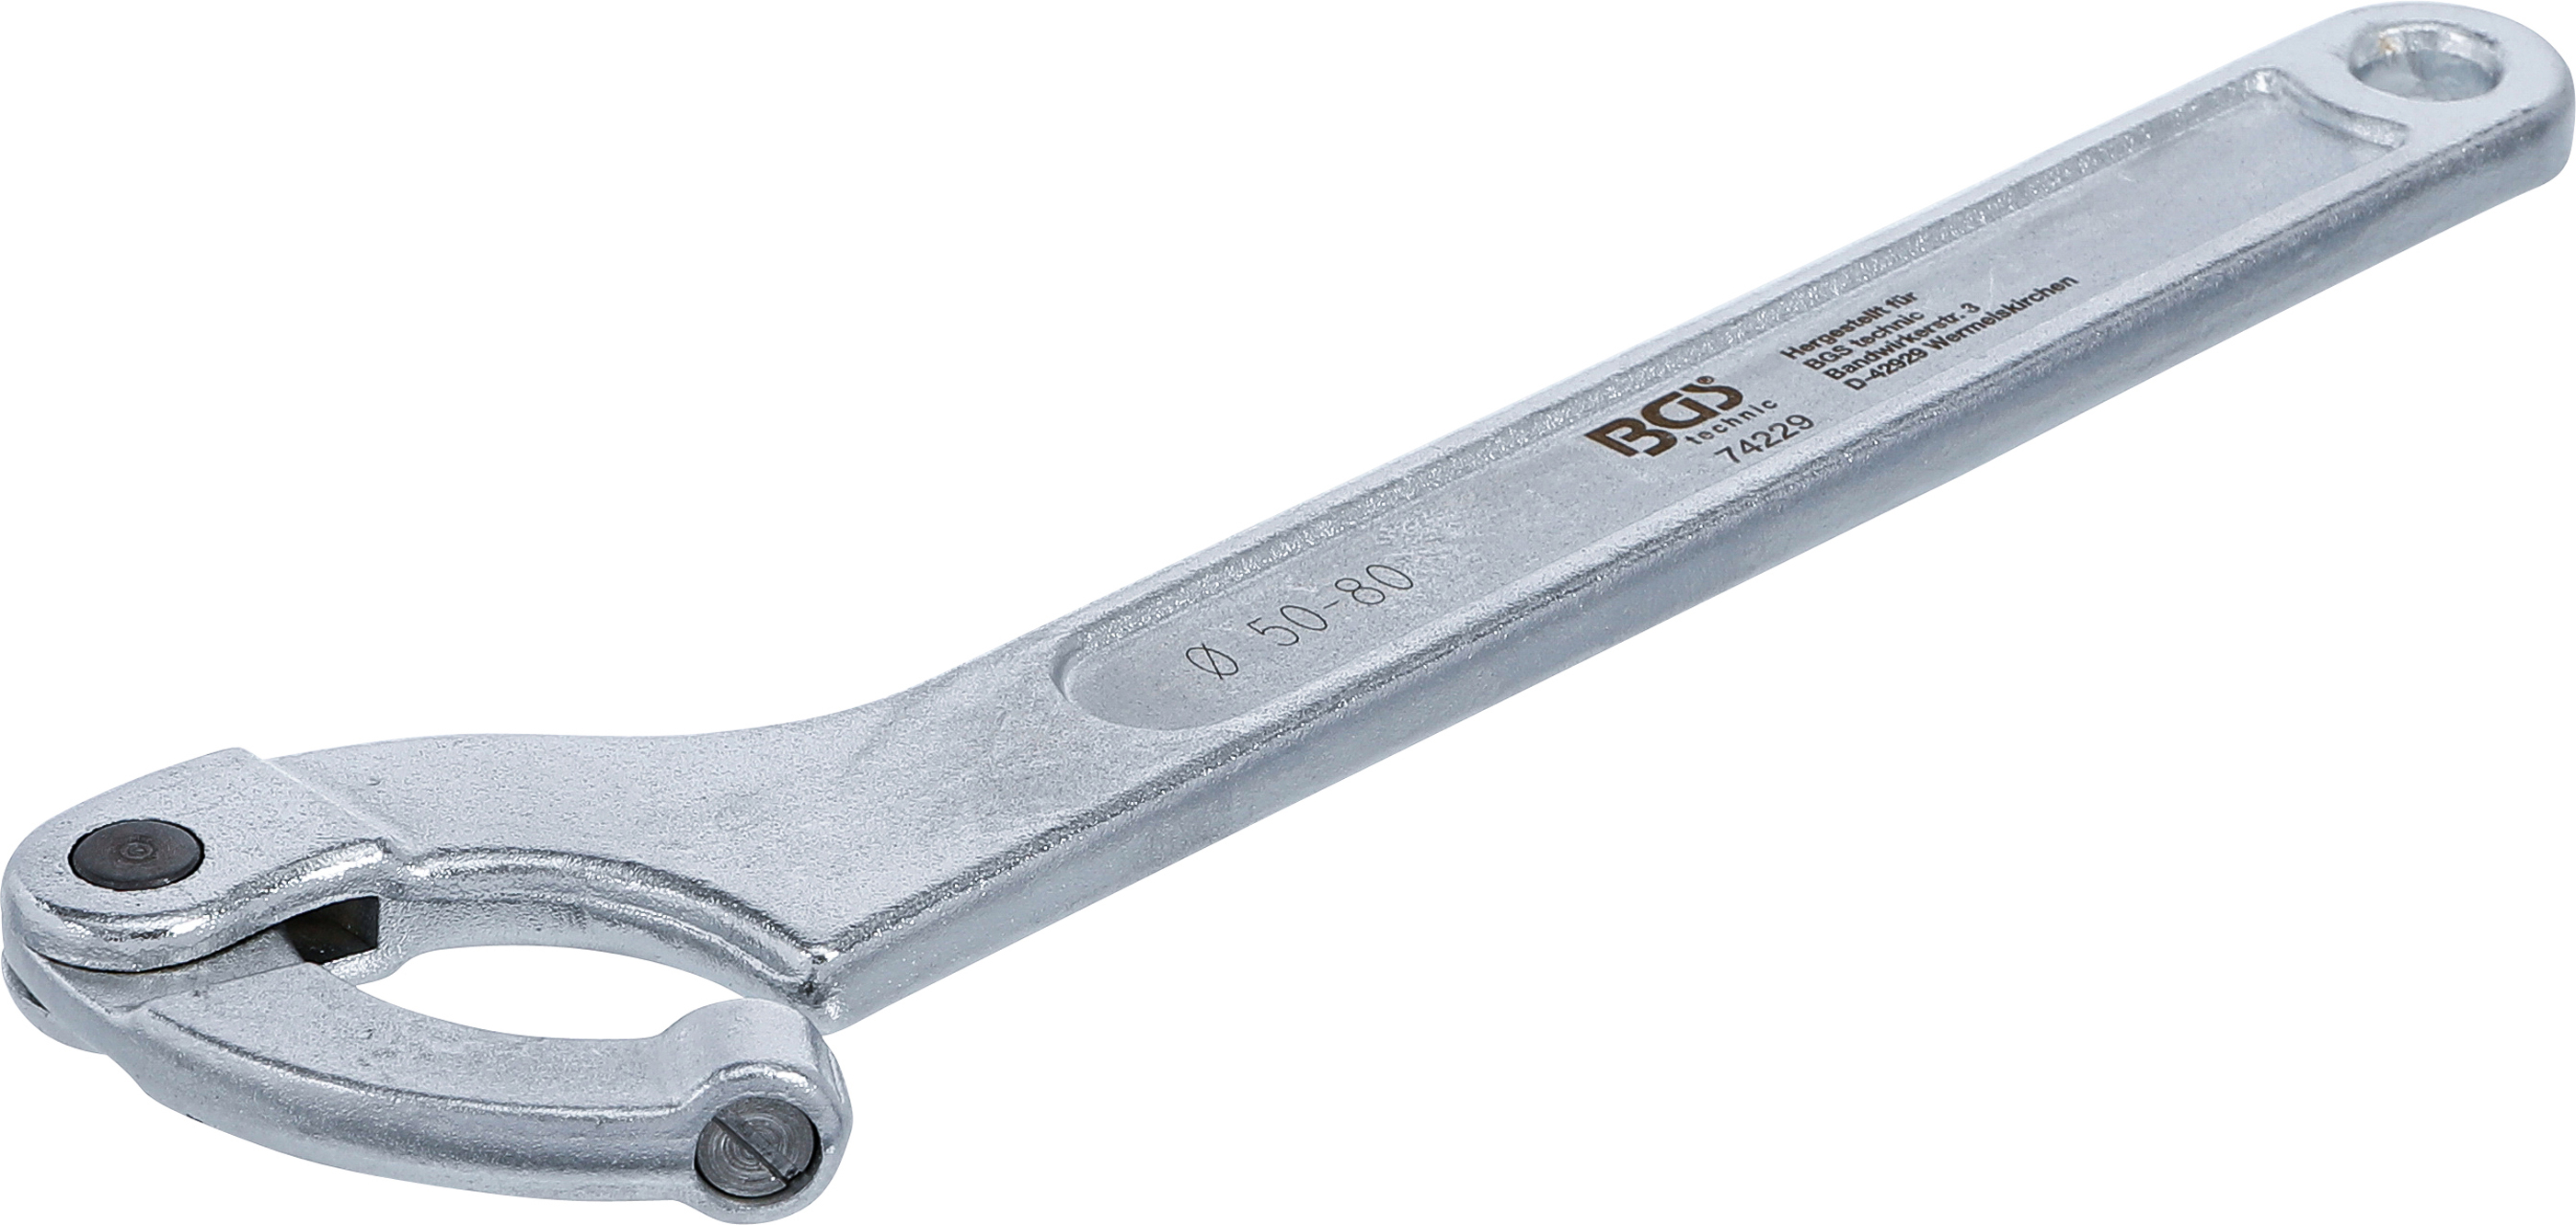 BGS Gelenk-Hakenschlüssel mit Zapfen | 50 - 80 mm